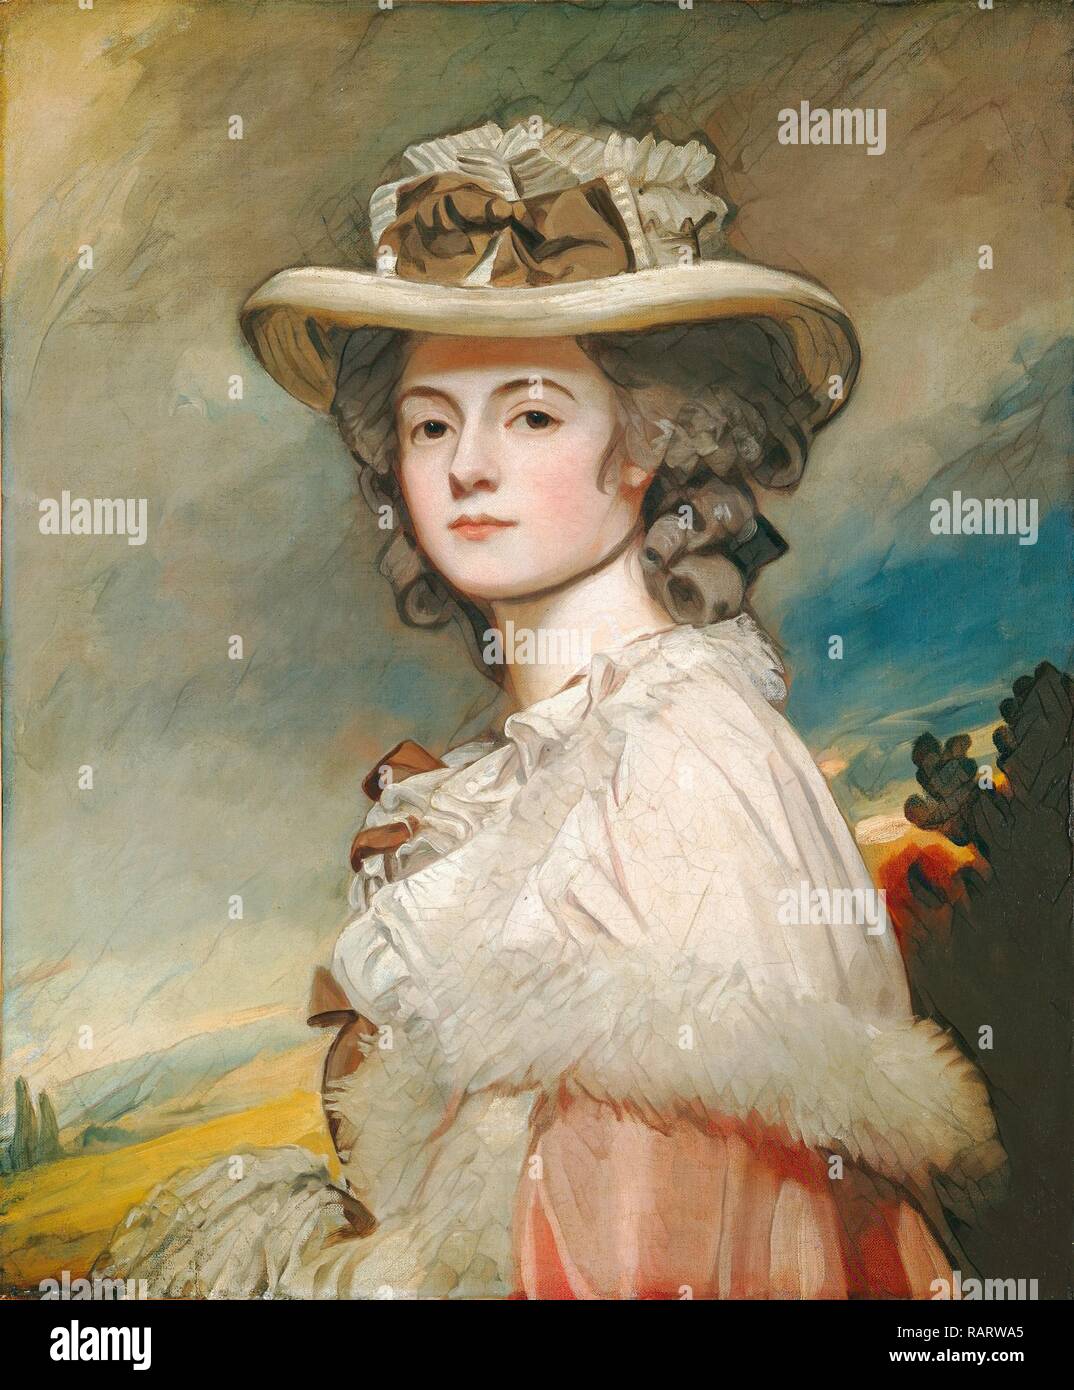 George Romney, Mme Davies Davenport, britannique, 1734-1802, 1782-1784, huile sur toile. Repensé par Gibon. L'art classique repensé Banque D'Images